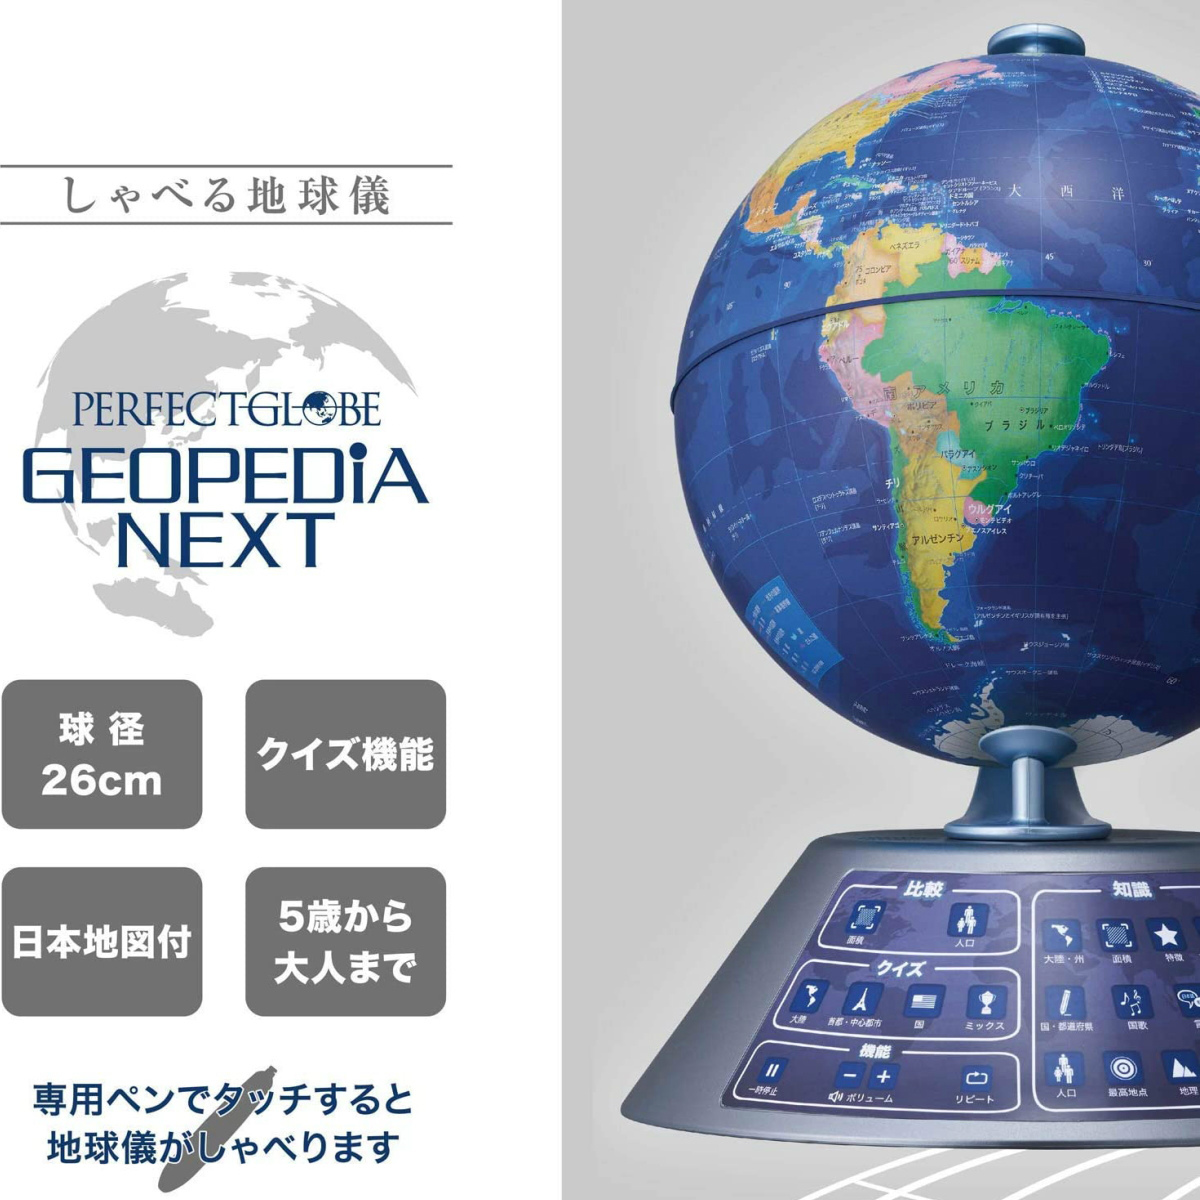 ネクスト ジオペディア Next Geopedia パーフェクトグローブ Pg Gpn19r しゃべる地球儀 ドウシシャ 机上アクセサリー 最適な材料 Udoor Co Uk